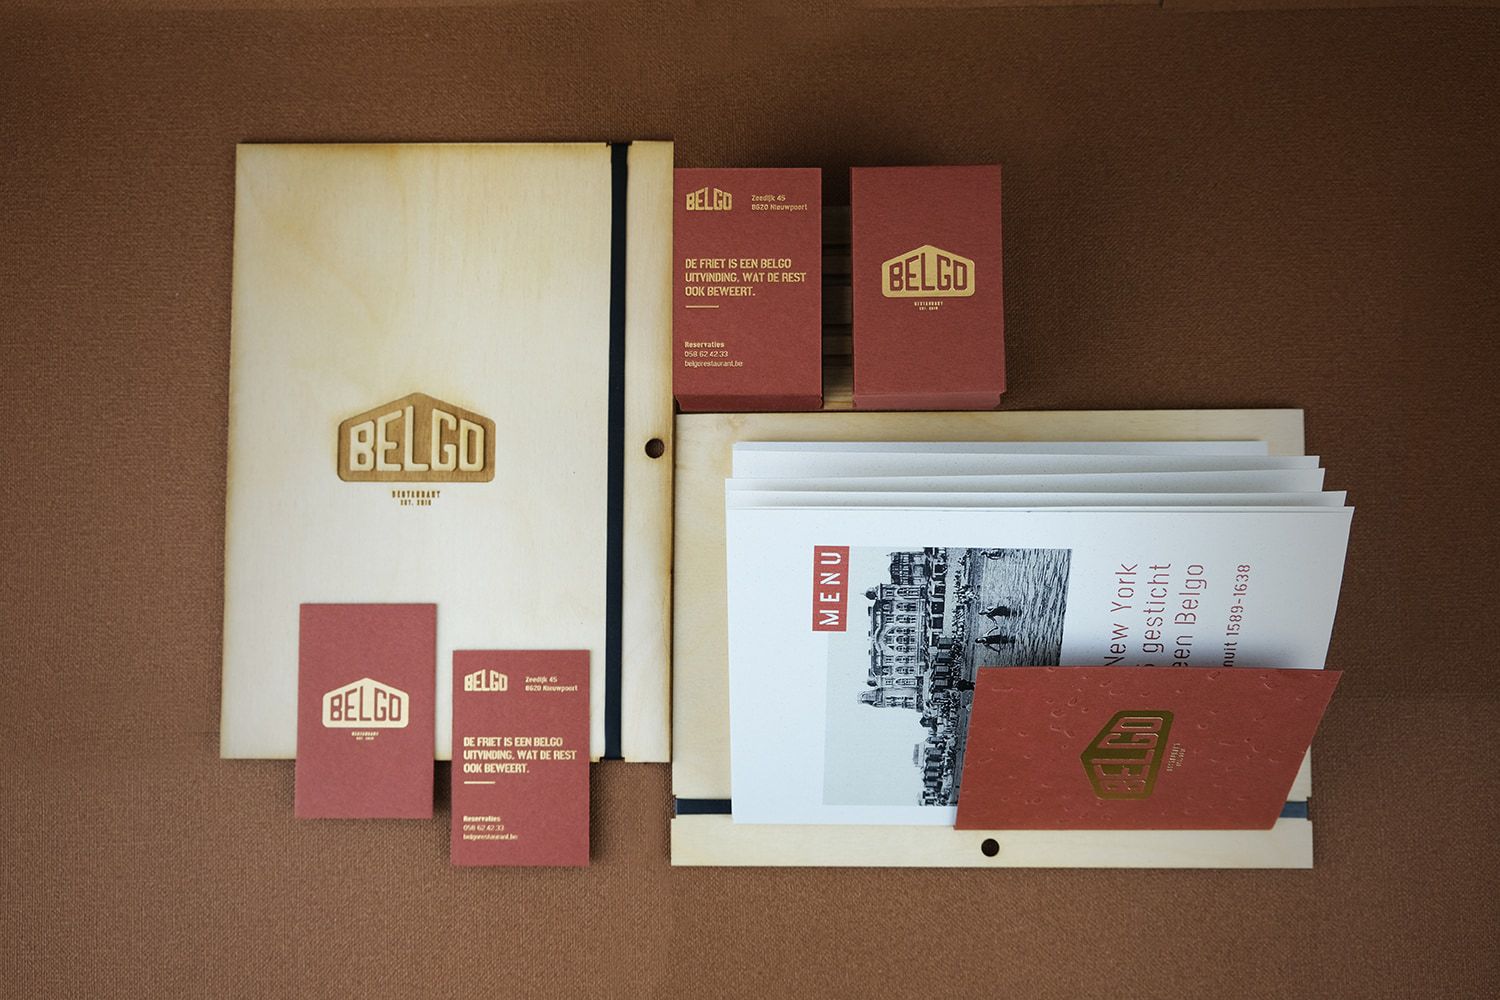 Branding for Belgo Restaurant